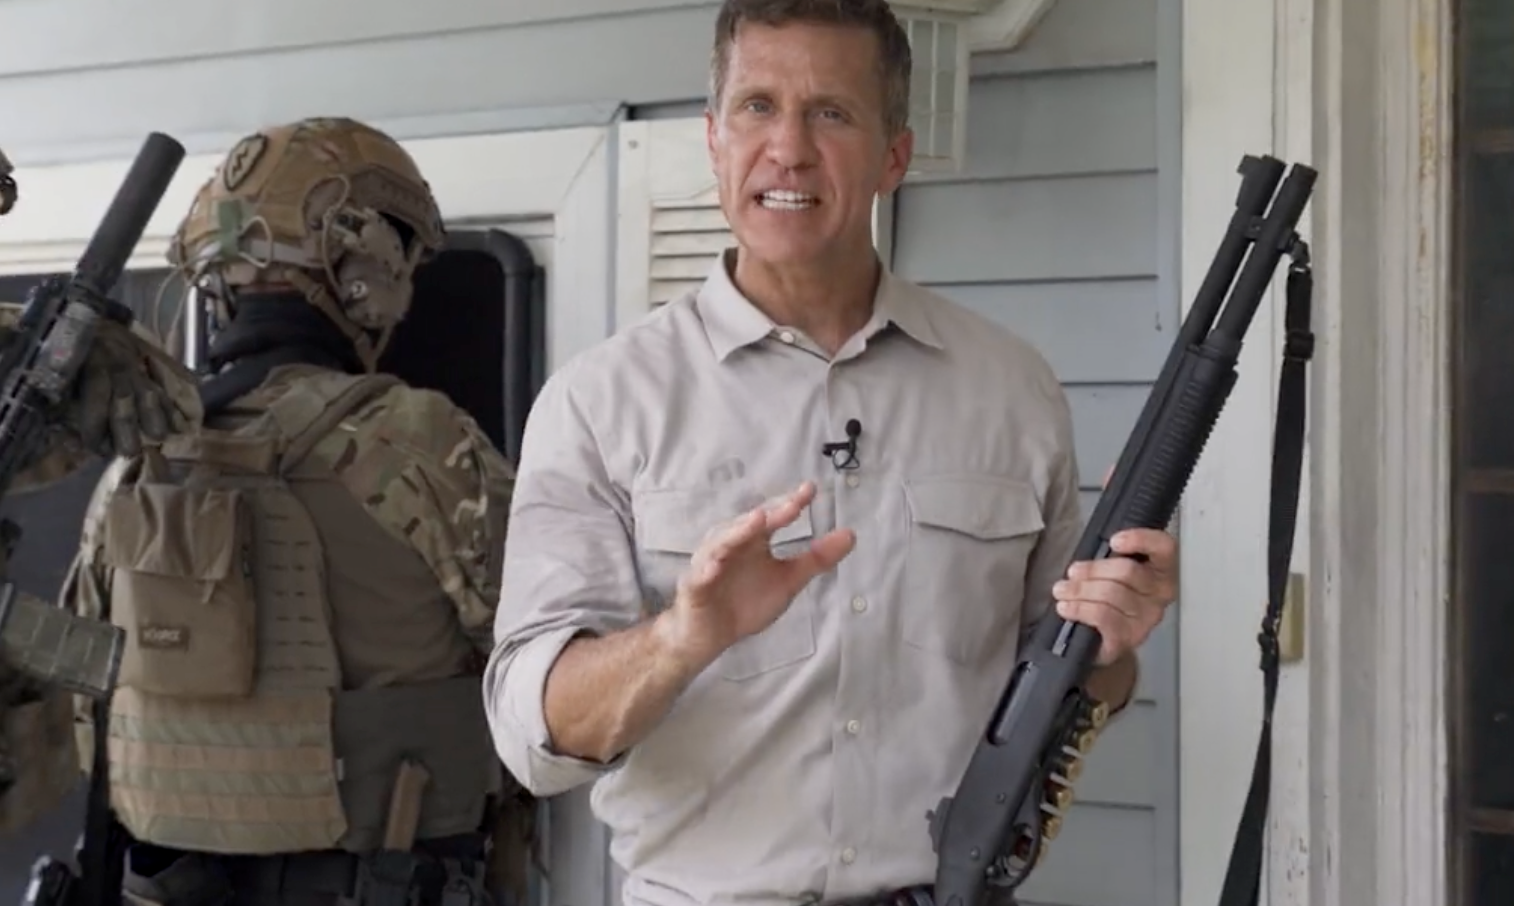 El anuncio muestra al candidato con un arma en las manos